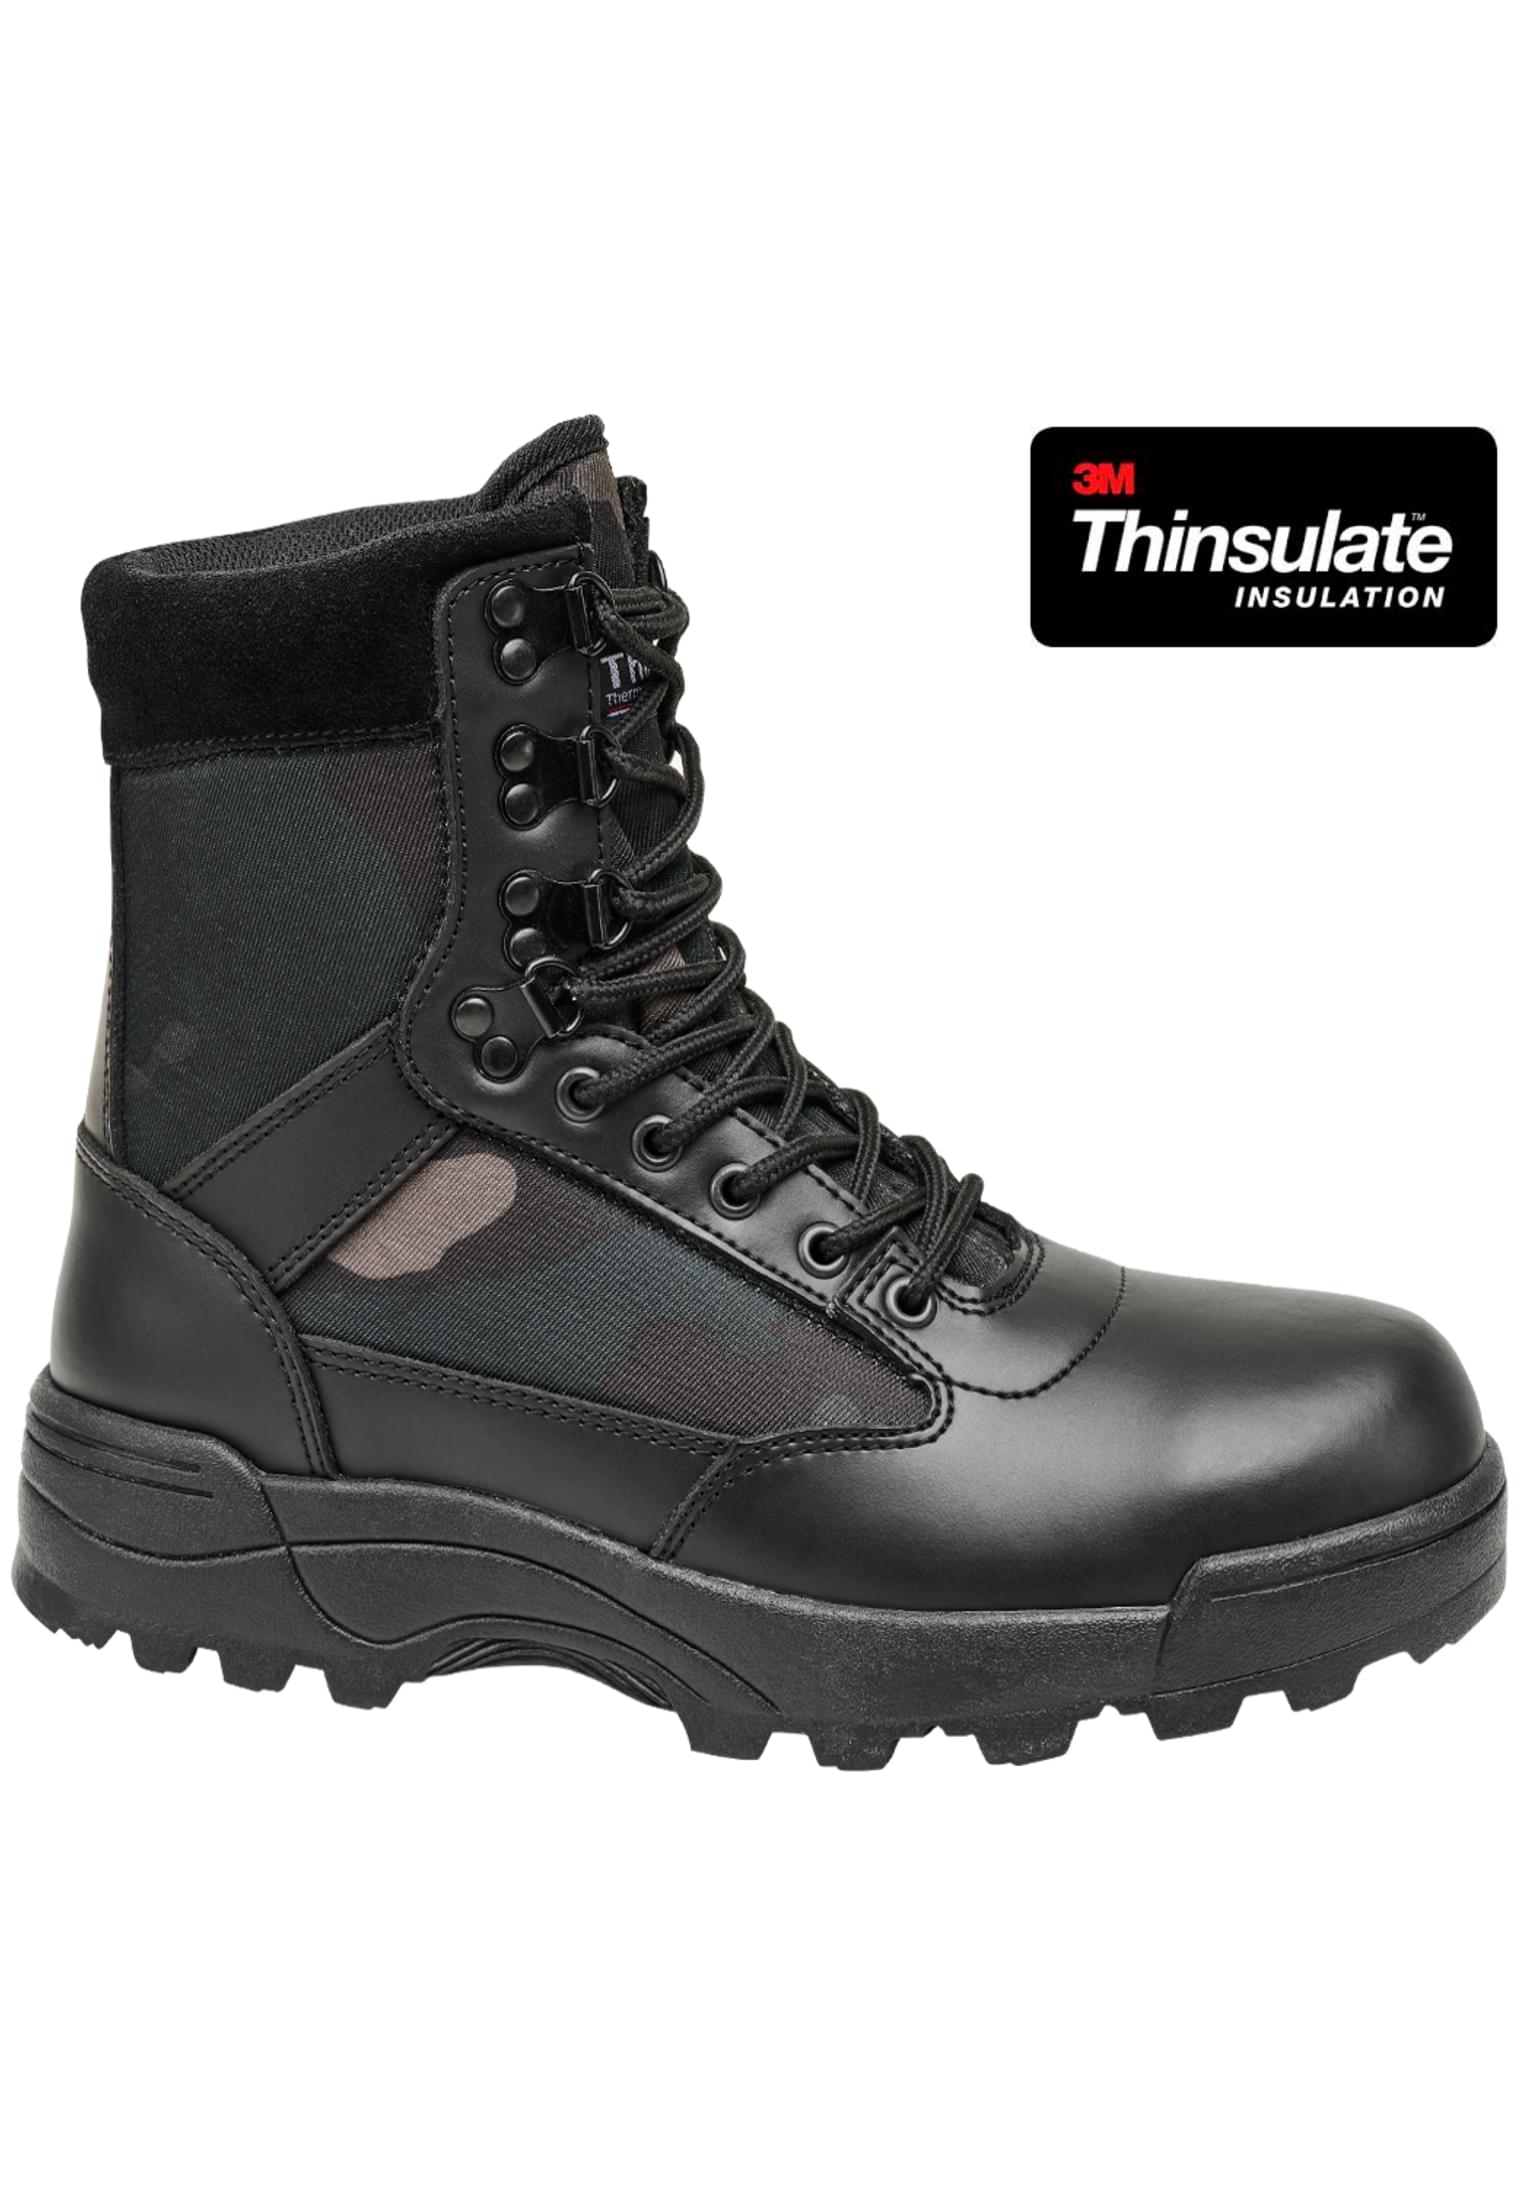 Schuhe Tactical Boots in Farbe darkcamo